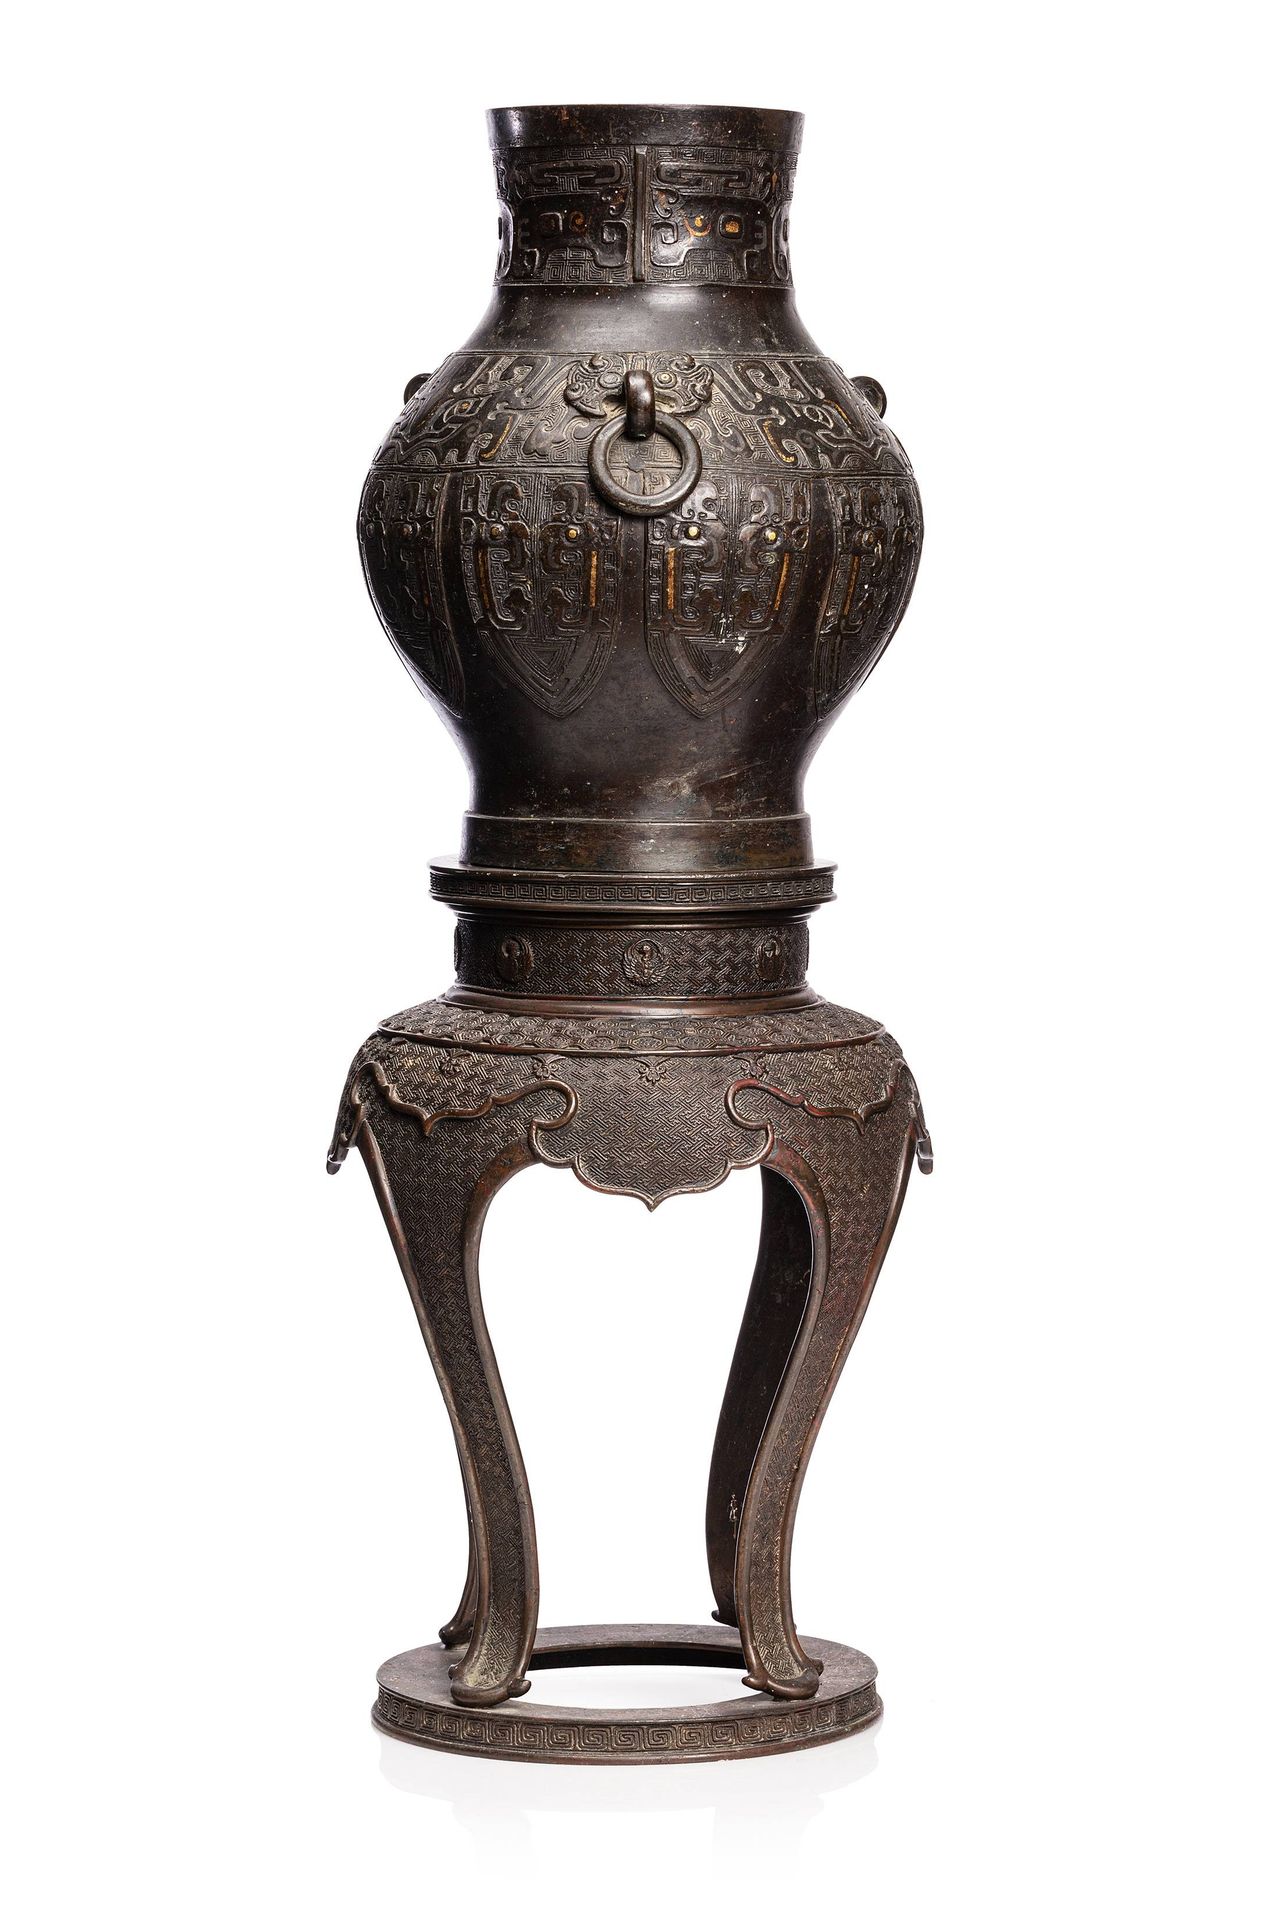 CHINE, XVIIe siècle 
Un vaso arcaico in bronzo con una patina marrone, decorato &hellip;